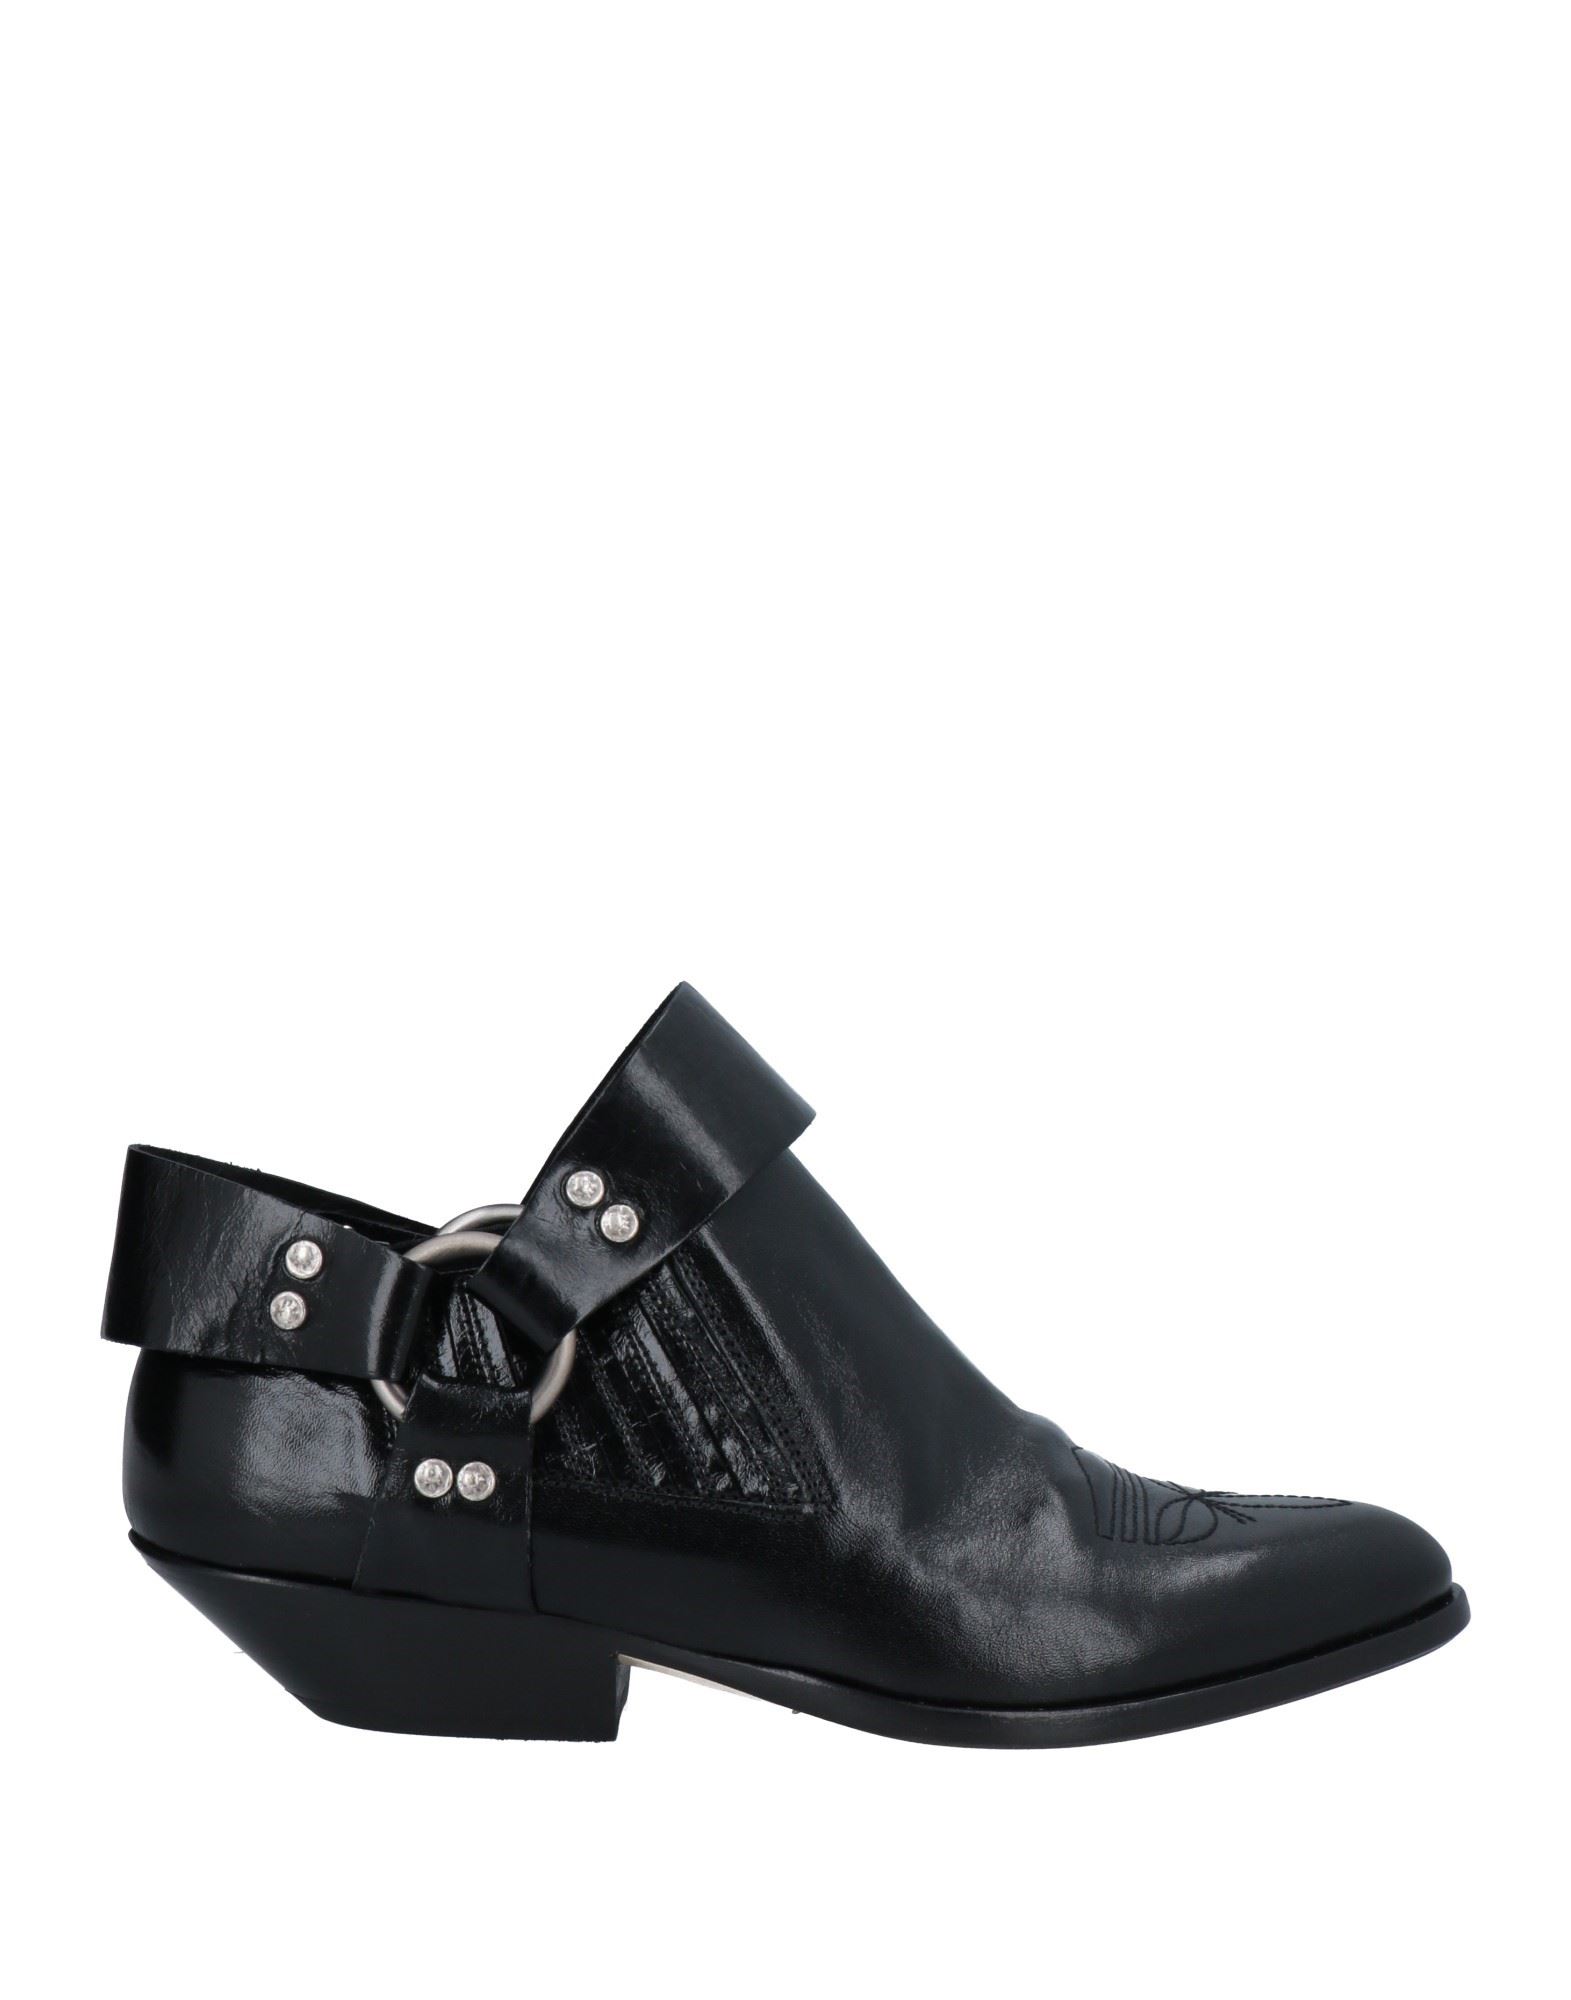 Materia Prima By Goffredo Fantini Ankle Boots In Black